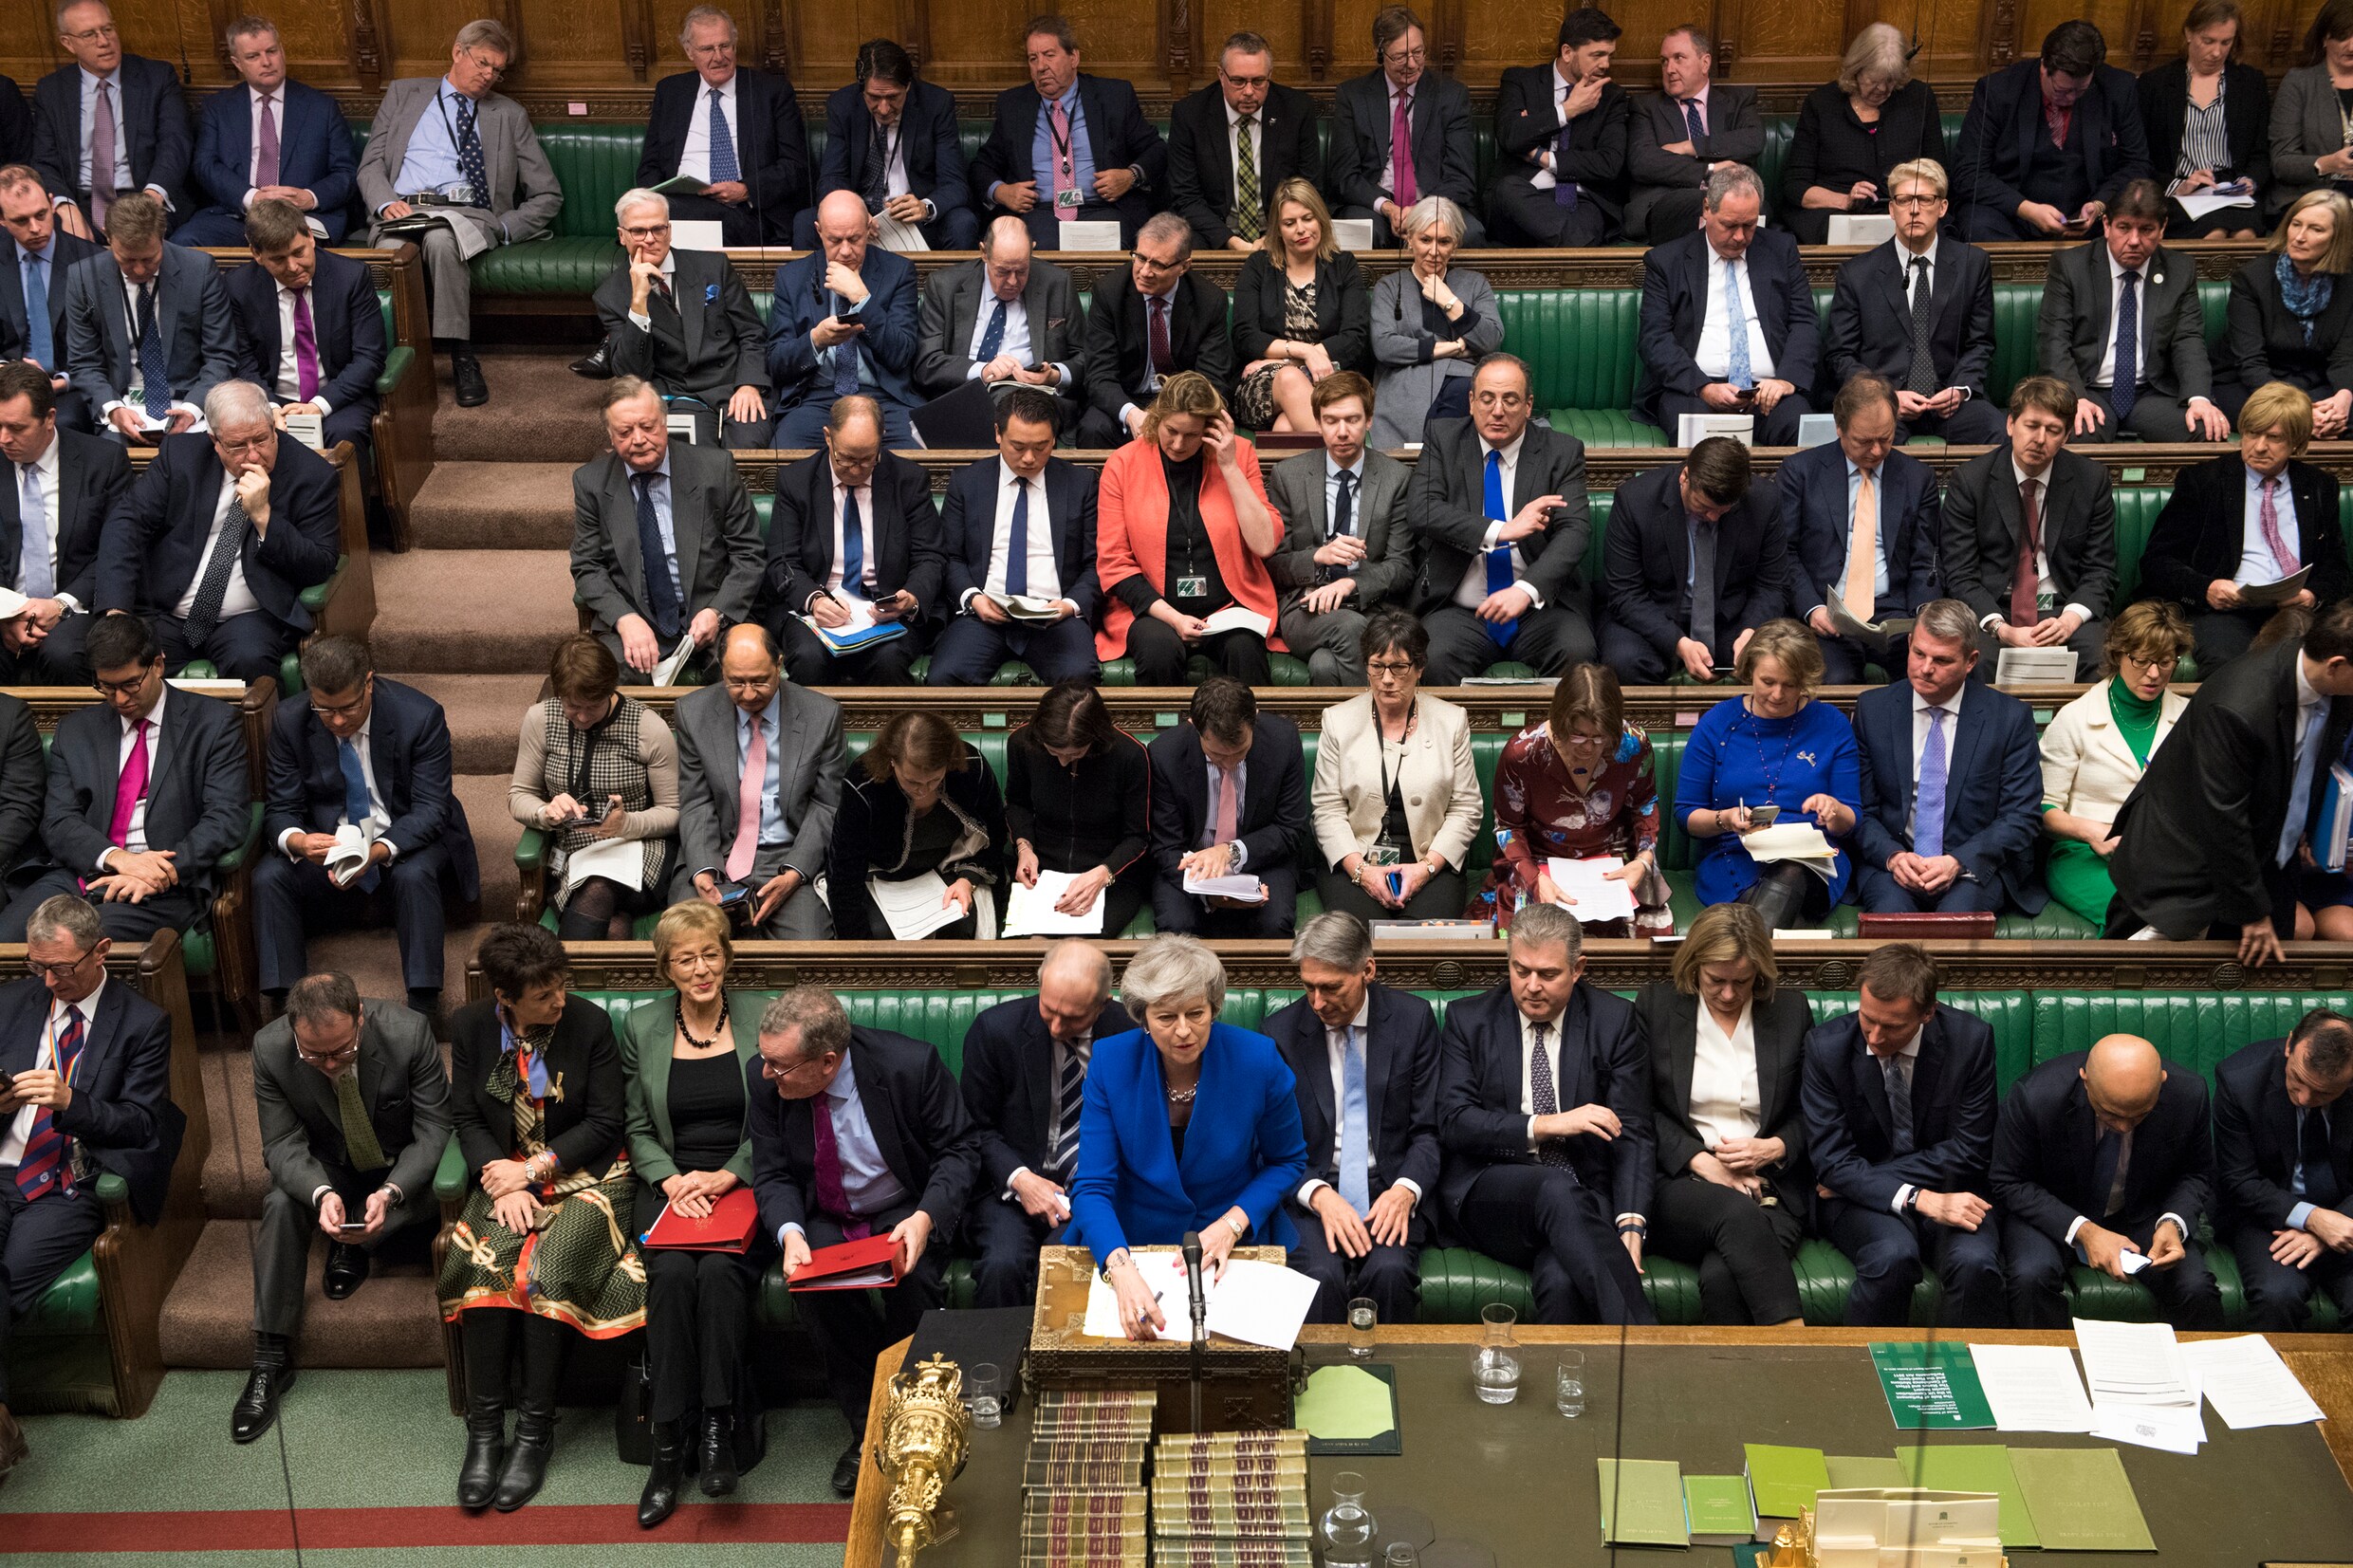 Angst voor Jeremy Corbyn redt Theresa May: motie van wantrouwen niet aangenomen